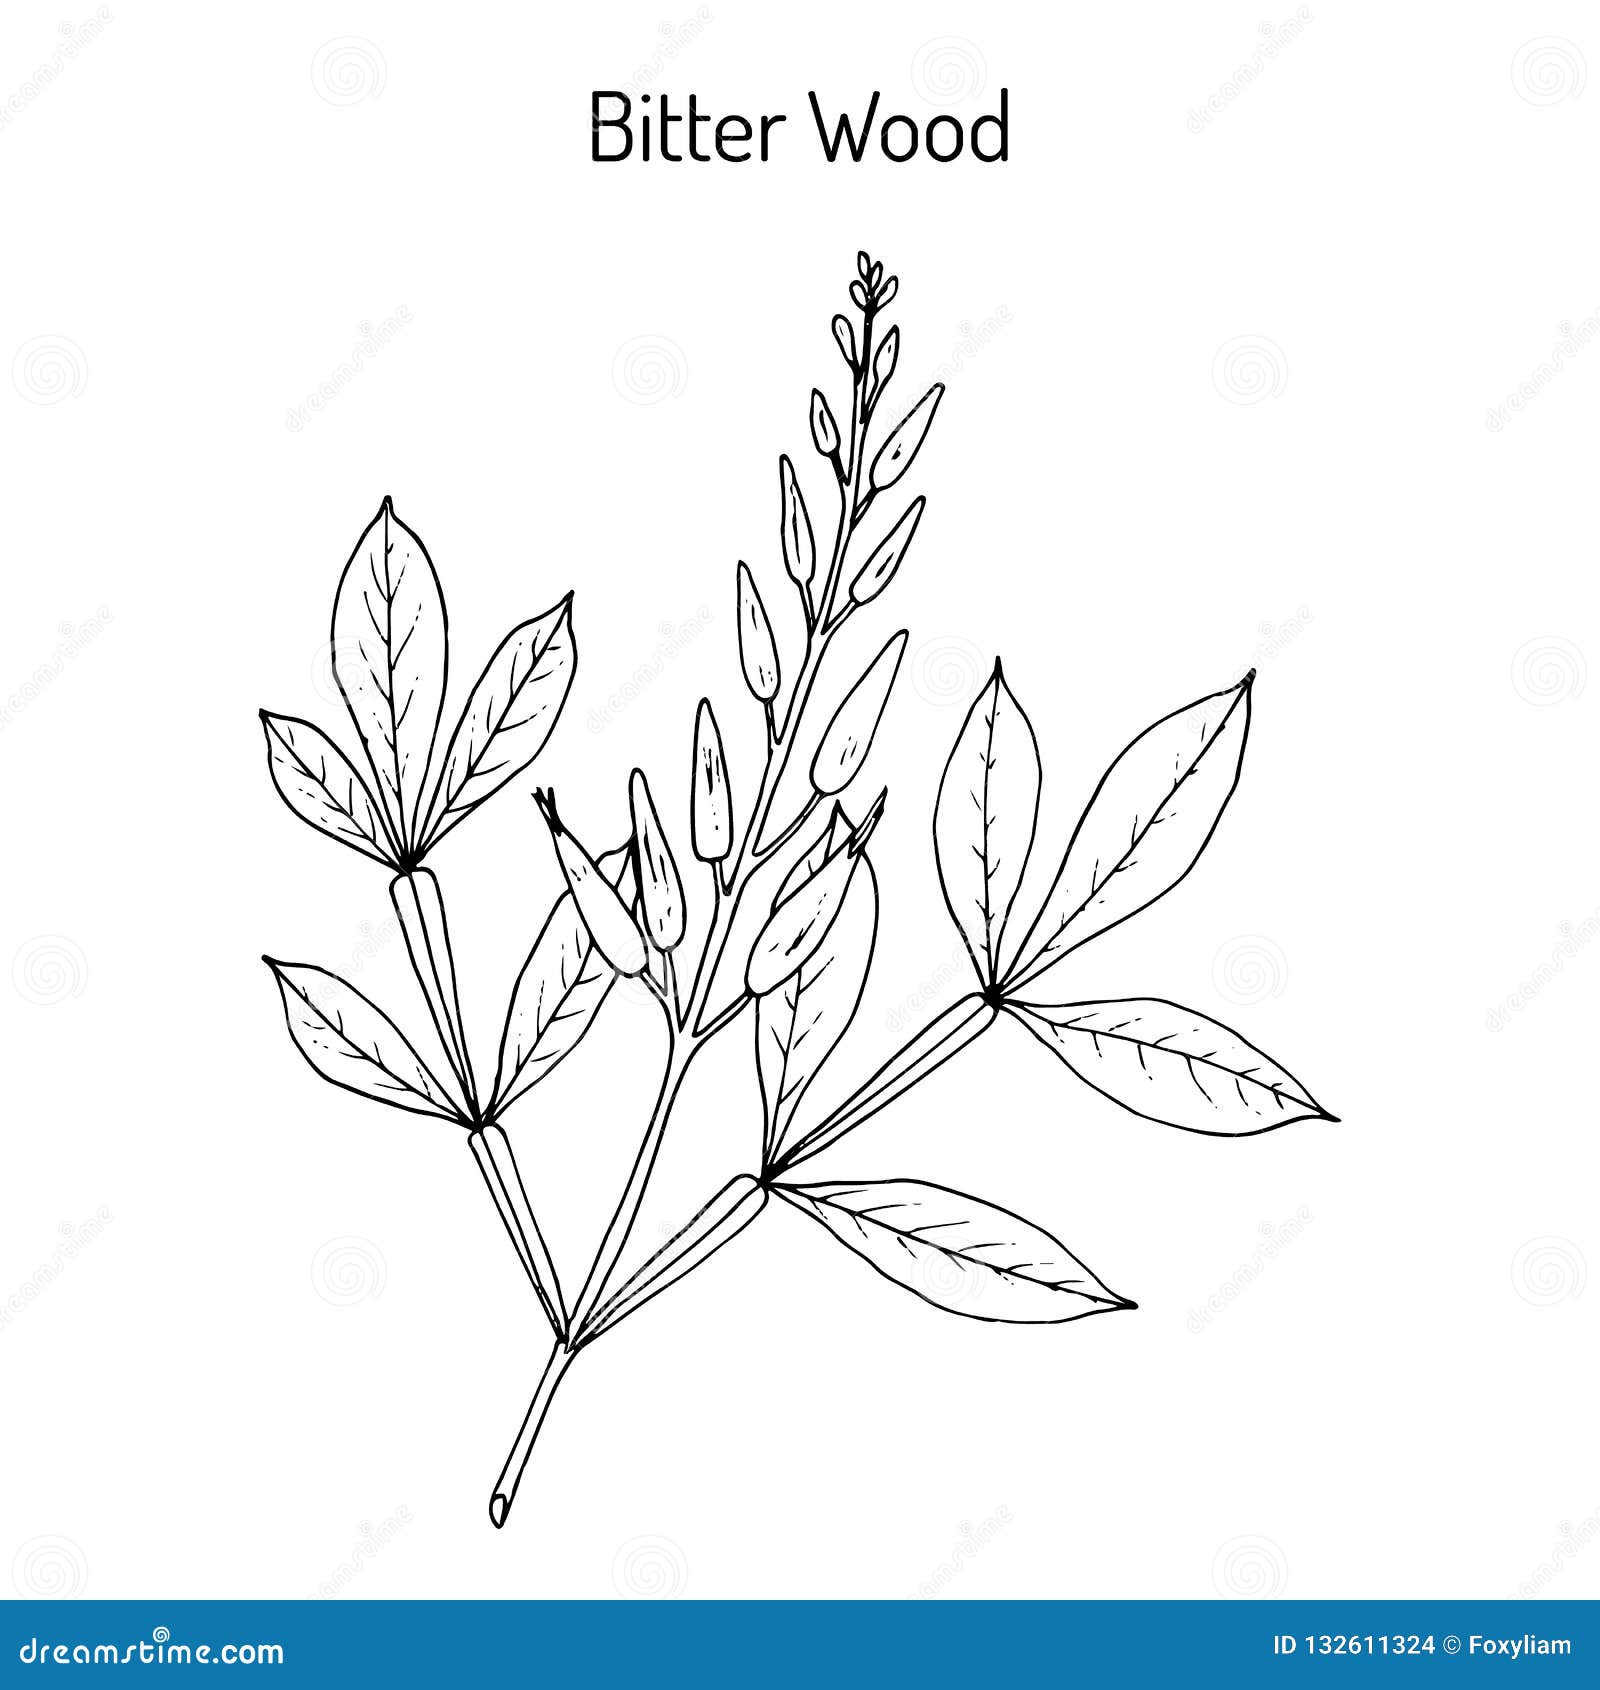 bitter-wood quassia amara , medicinal plant